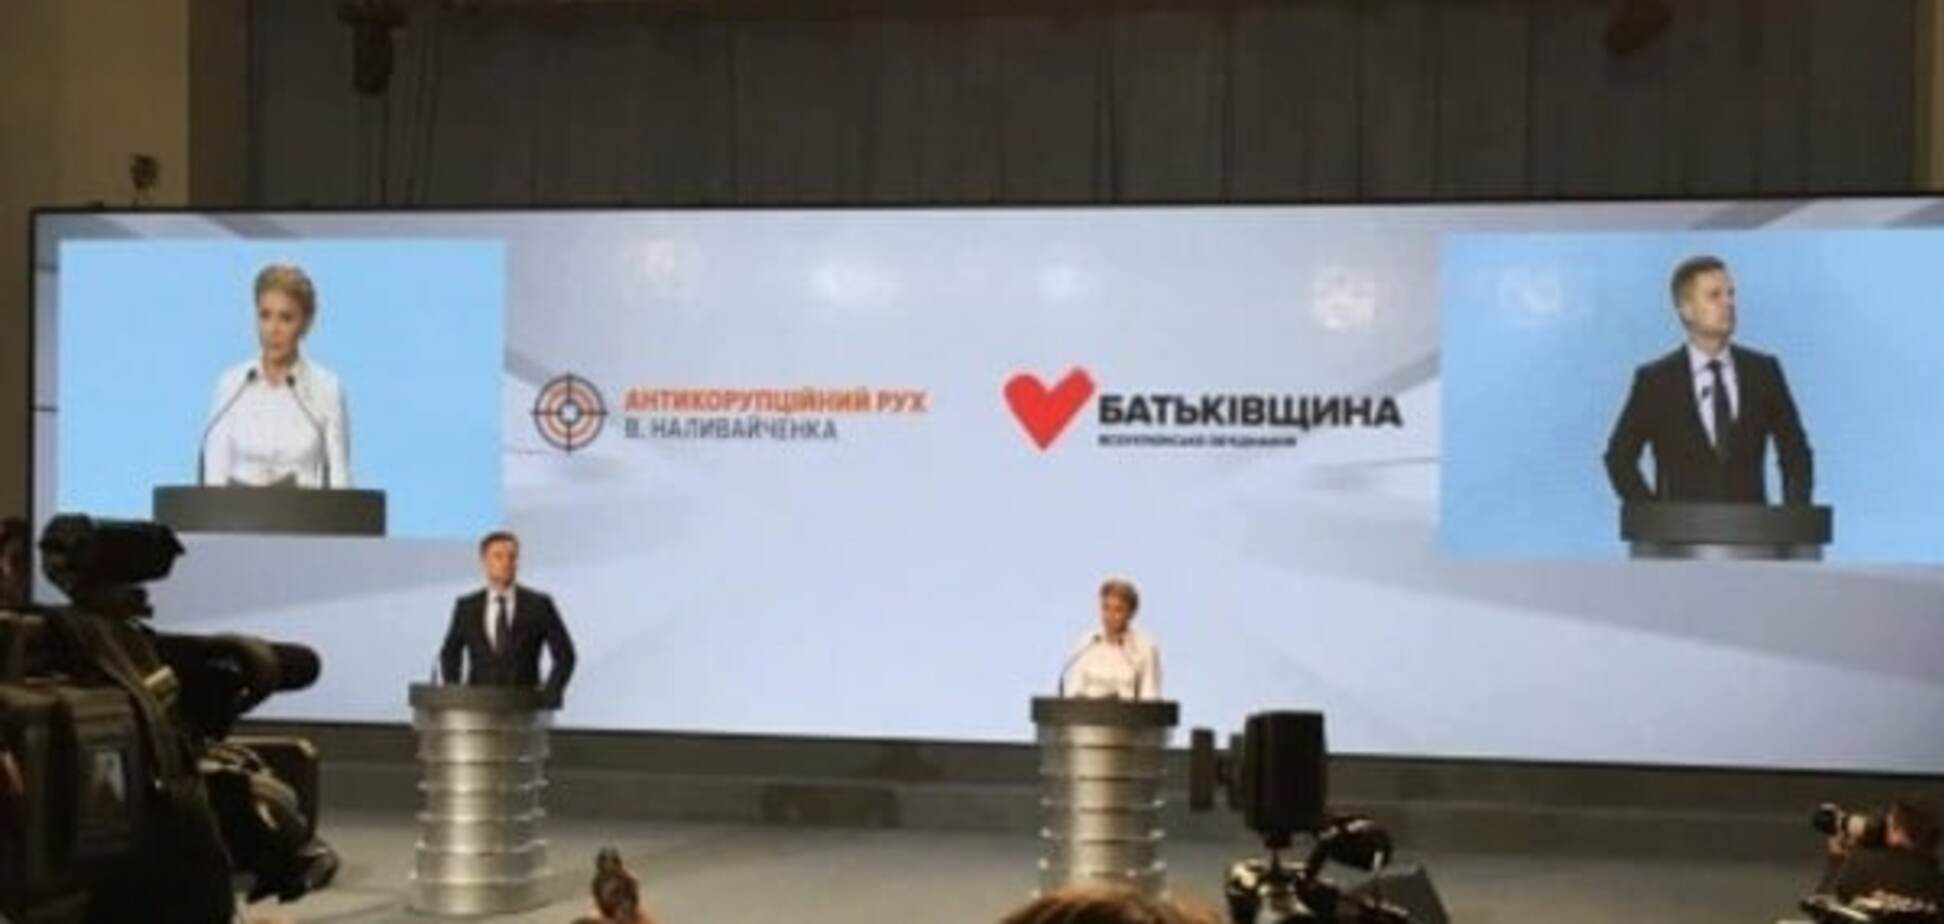 'Сердечный союз': Тимошенко и Наливайченко объединились и потребовали смены власти